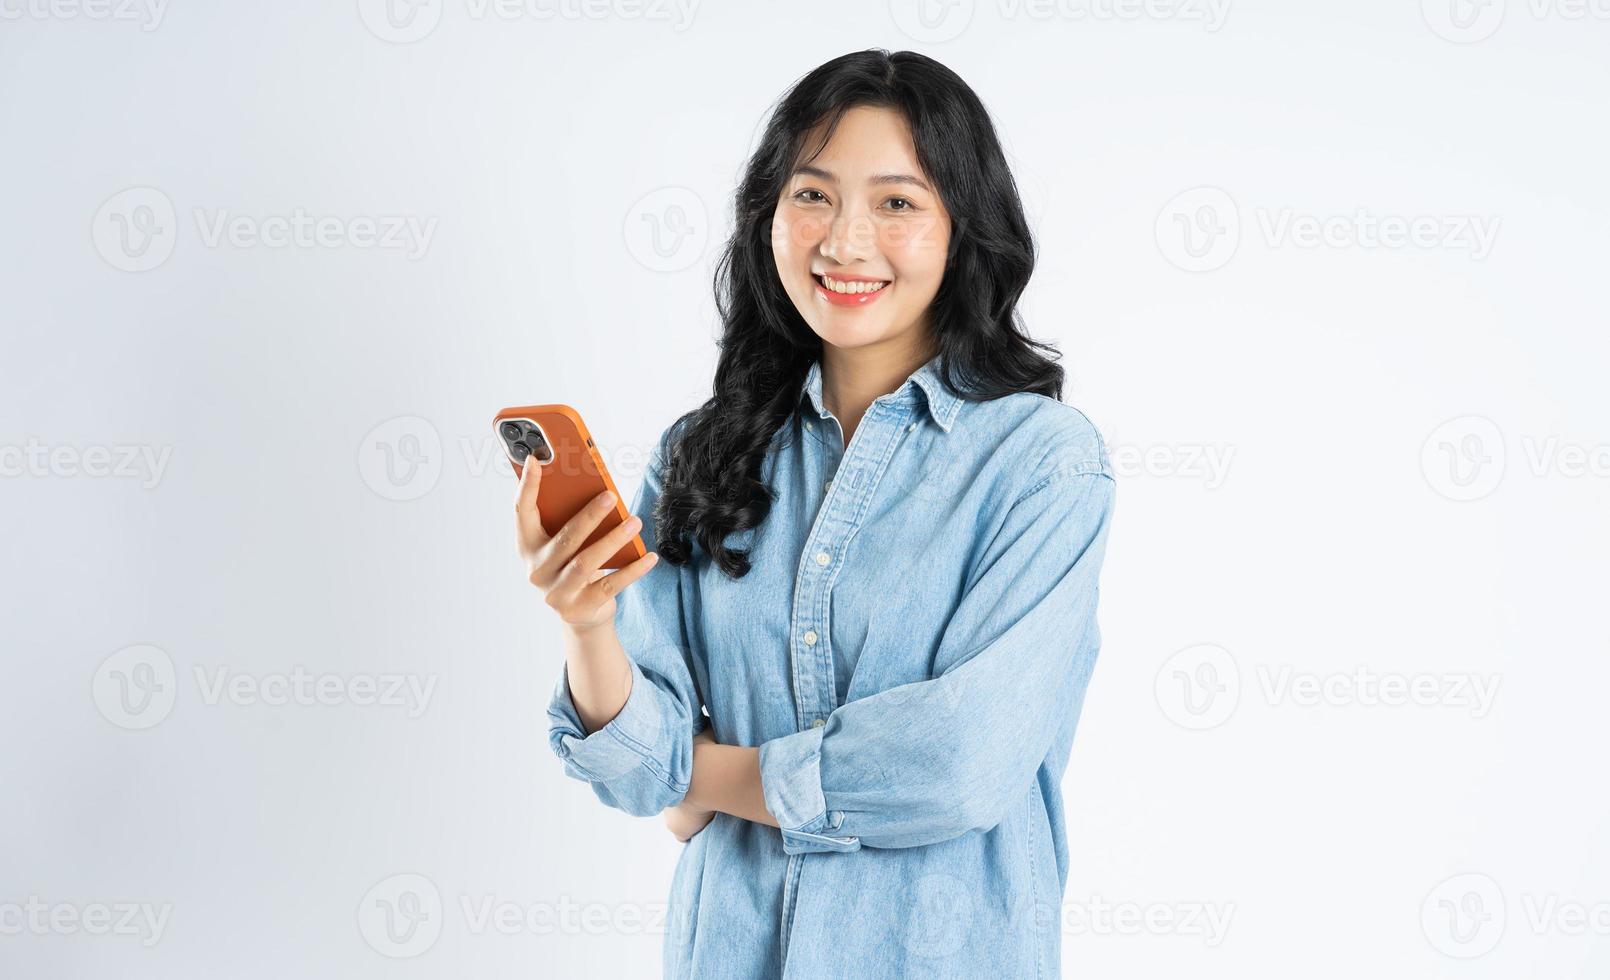 beautiful asian girl image on white background photo